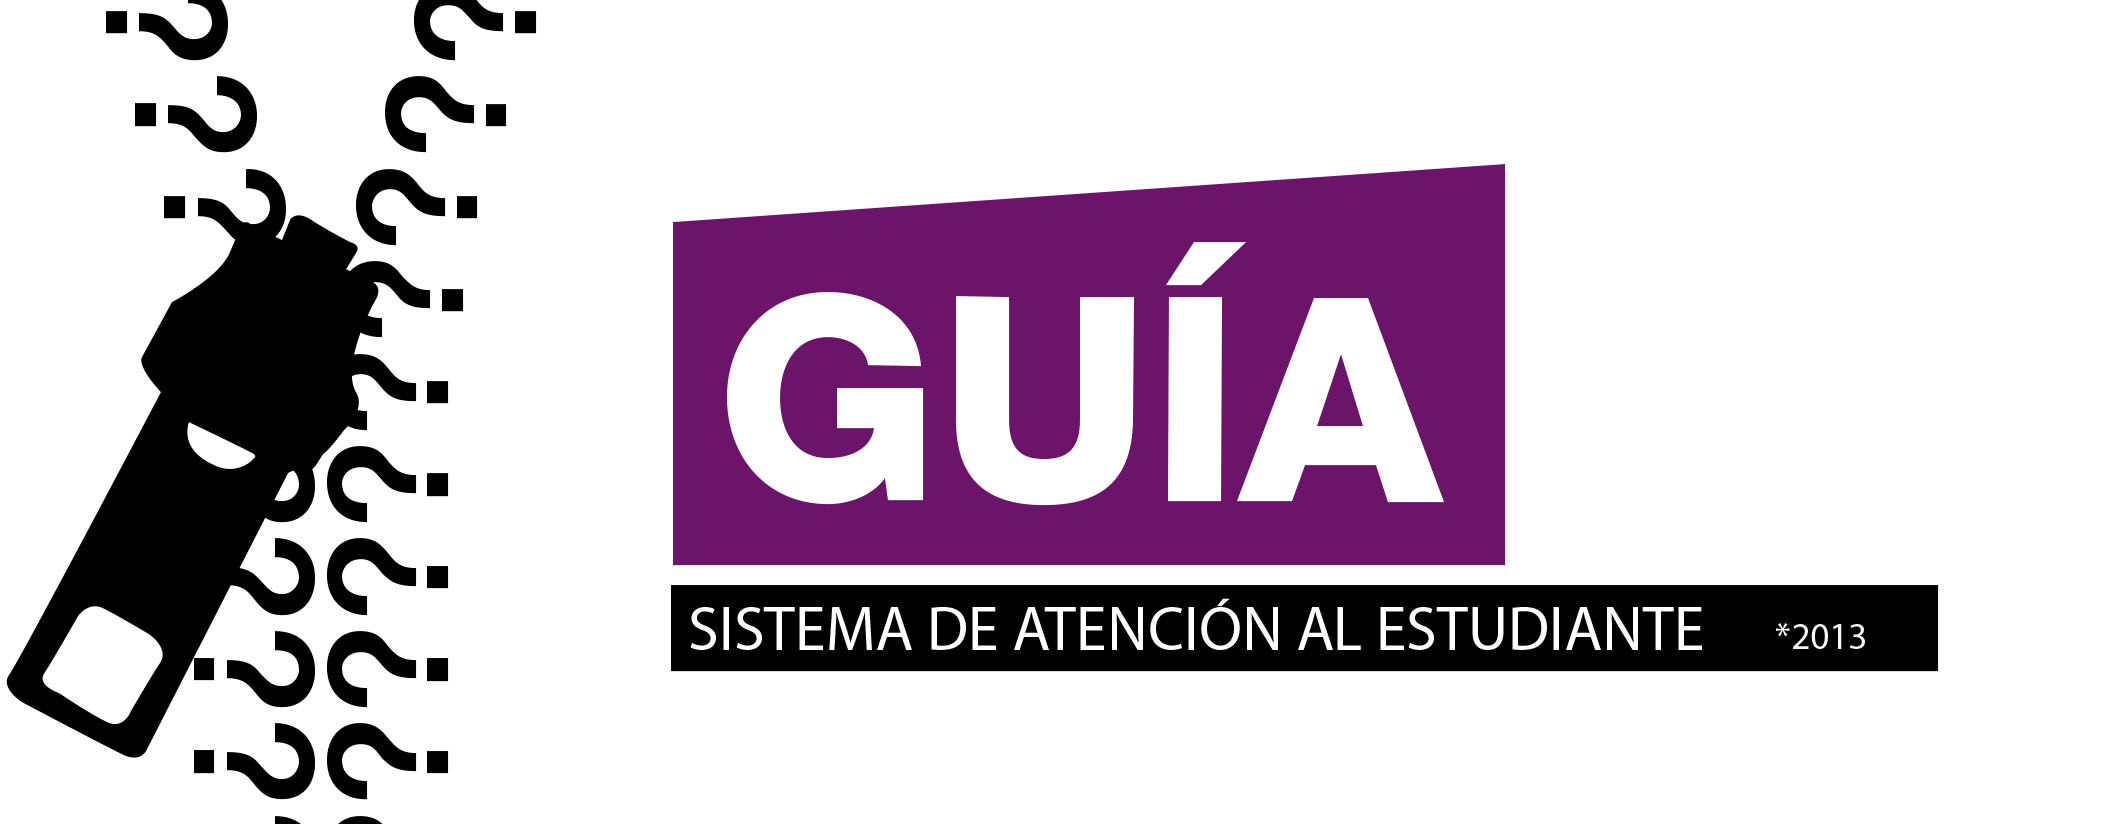 GUIA DEL ESTUDIANTE 2013